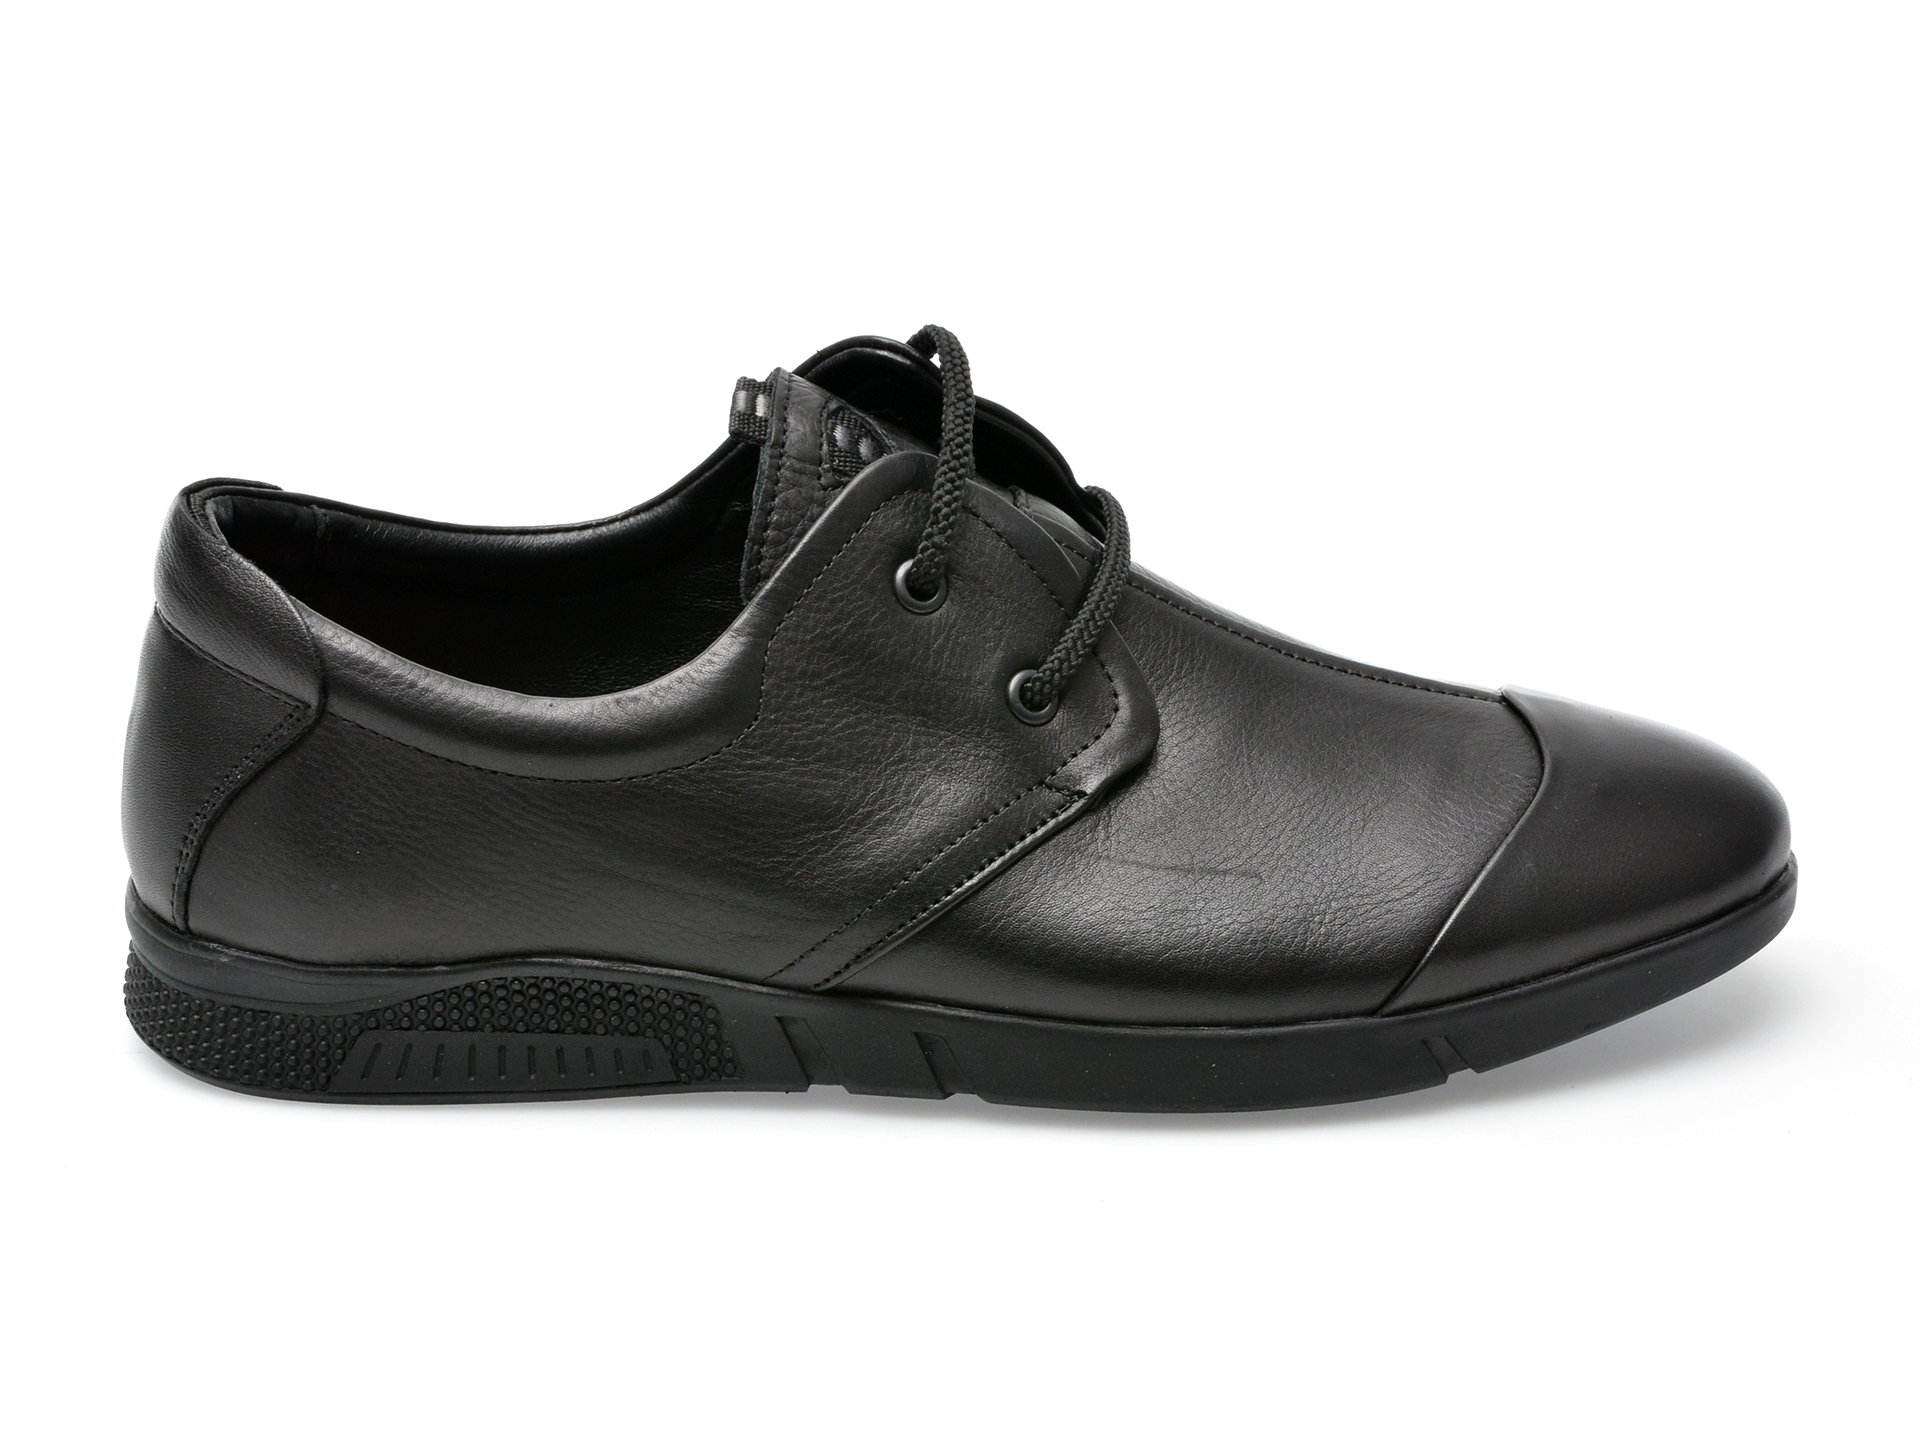 Poze Pantofi OTTER negri, 99110, din piele naturala Tezyo